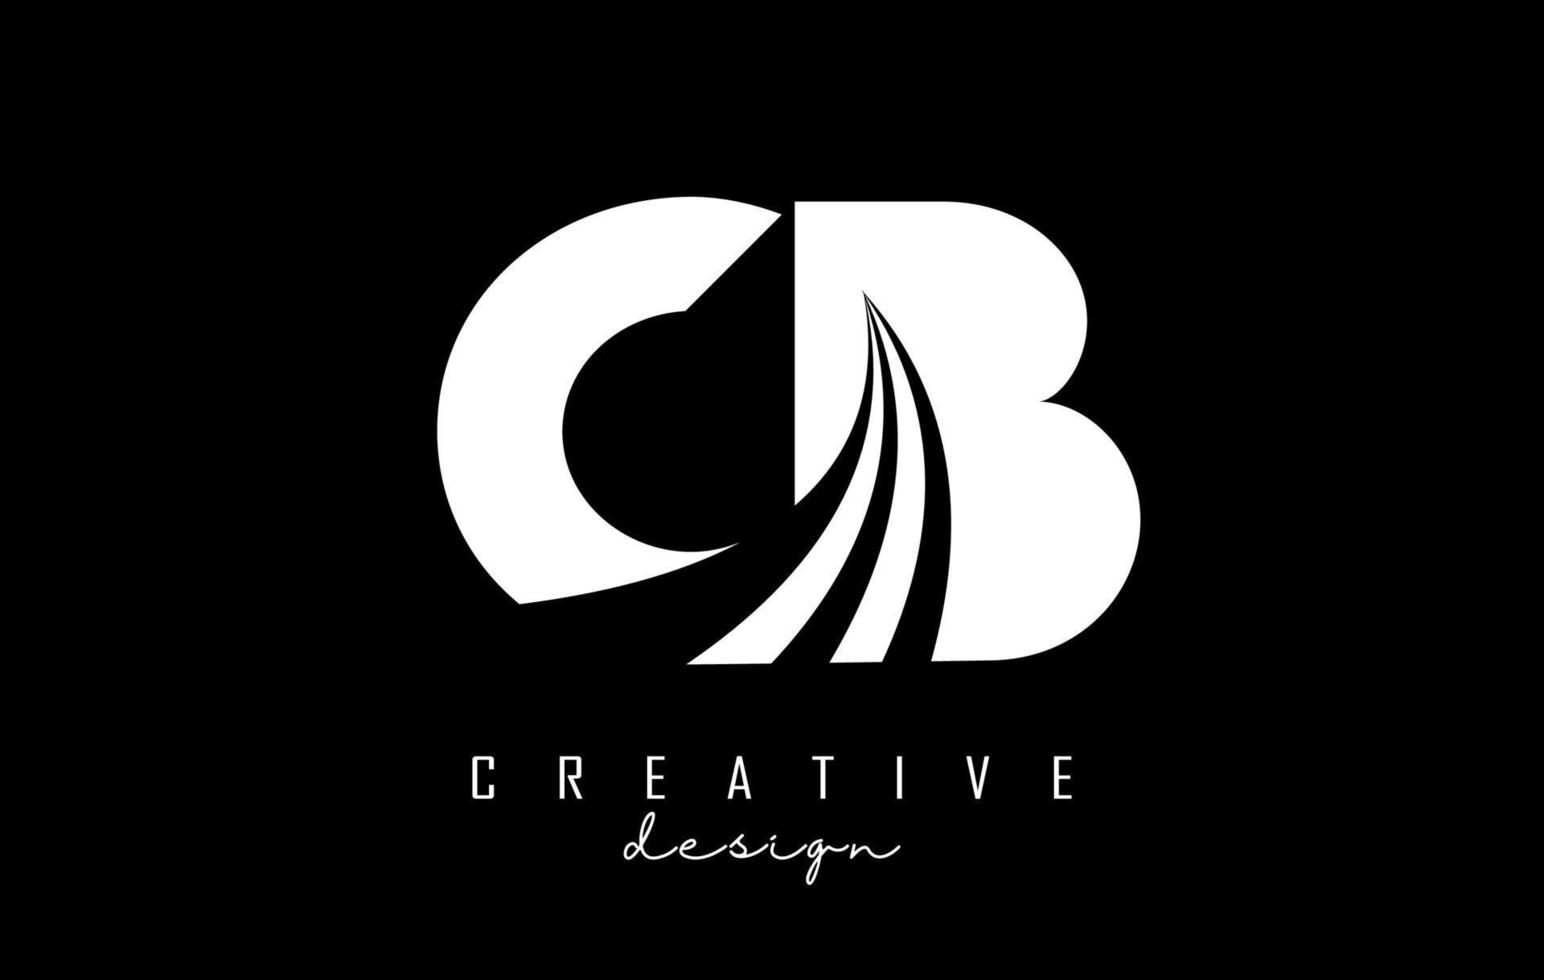 weiße buchstaben cb cb-logo mit führenden linien und straßenkonzeptdesign. Buchstaben mit geometrischem Design. vektor